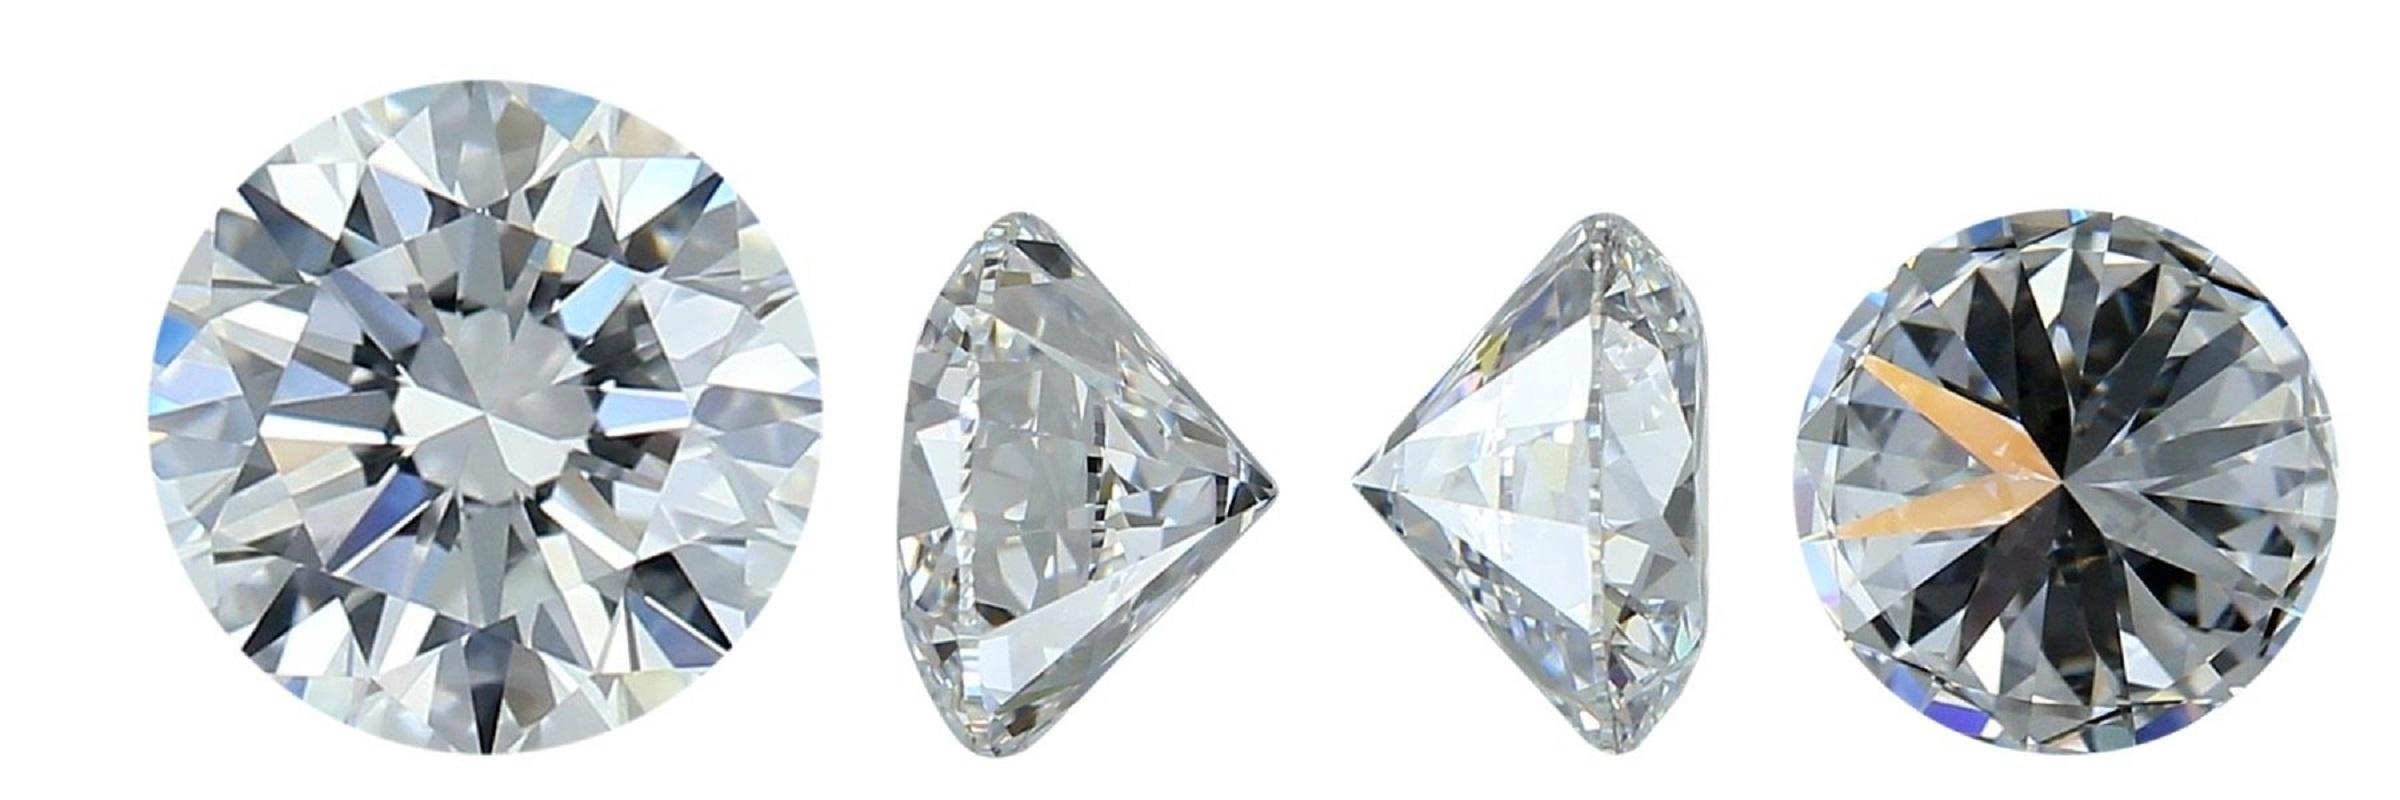 Brillant diamant rond de taille naturelle de 1,05 carat D IF excellent, taille idéale. Ce diamant est livré avec un certificat IGI, un numéro d'inscription au laser et un blister de sécurité.

SKU : JM-182
IGI 546288531
